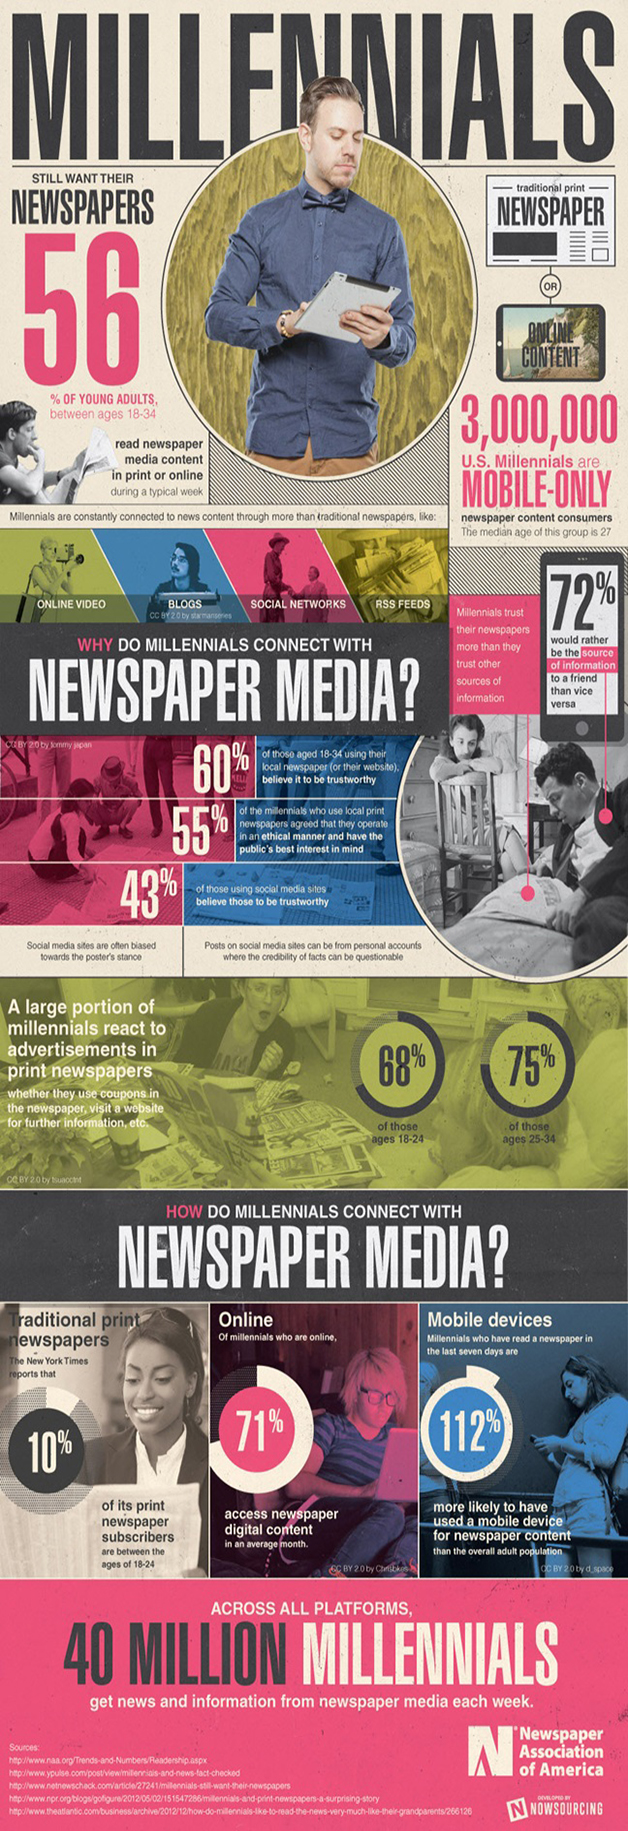 NAA-Millennials-Still-Want-Their-Newspapers